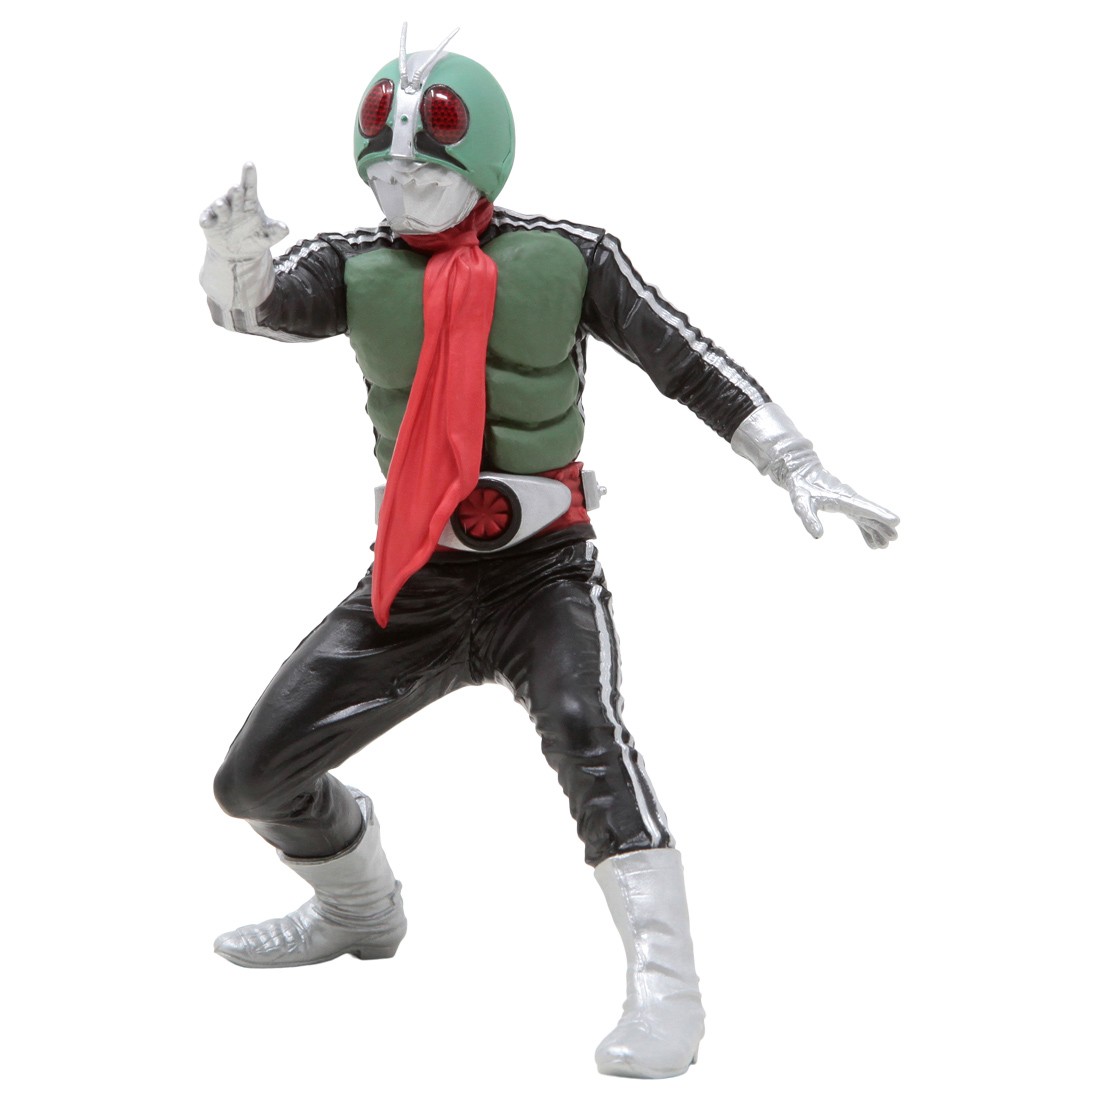 Banpresto Kamen Rider Hero's Brave Masked Rider 1 Ver. B Statue Figure (green)